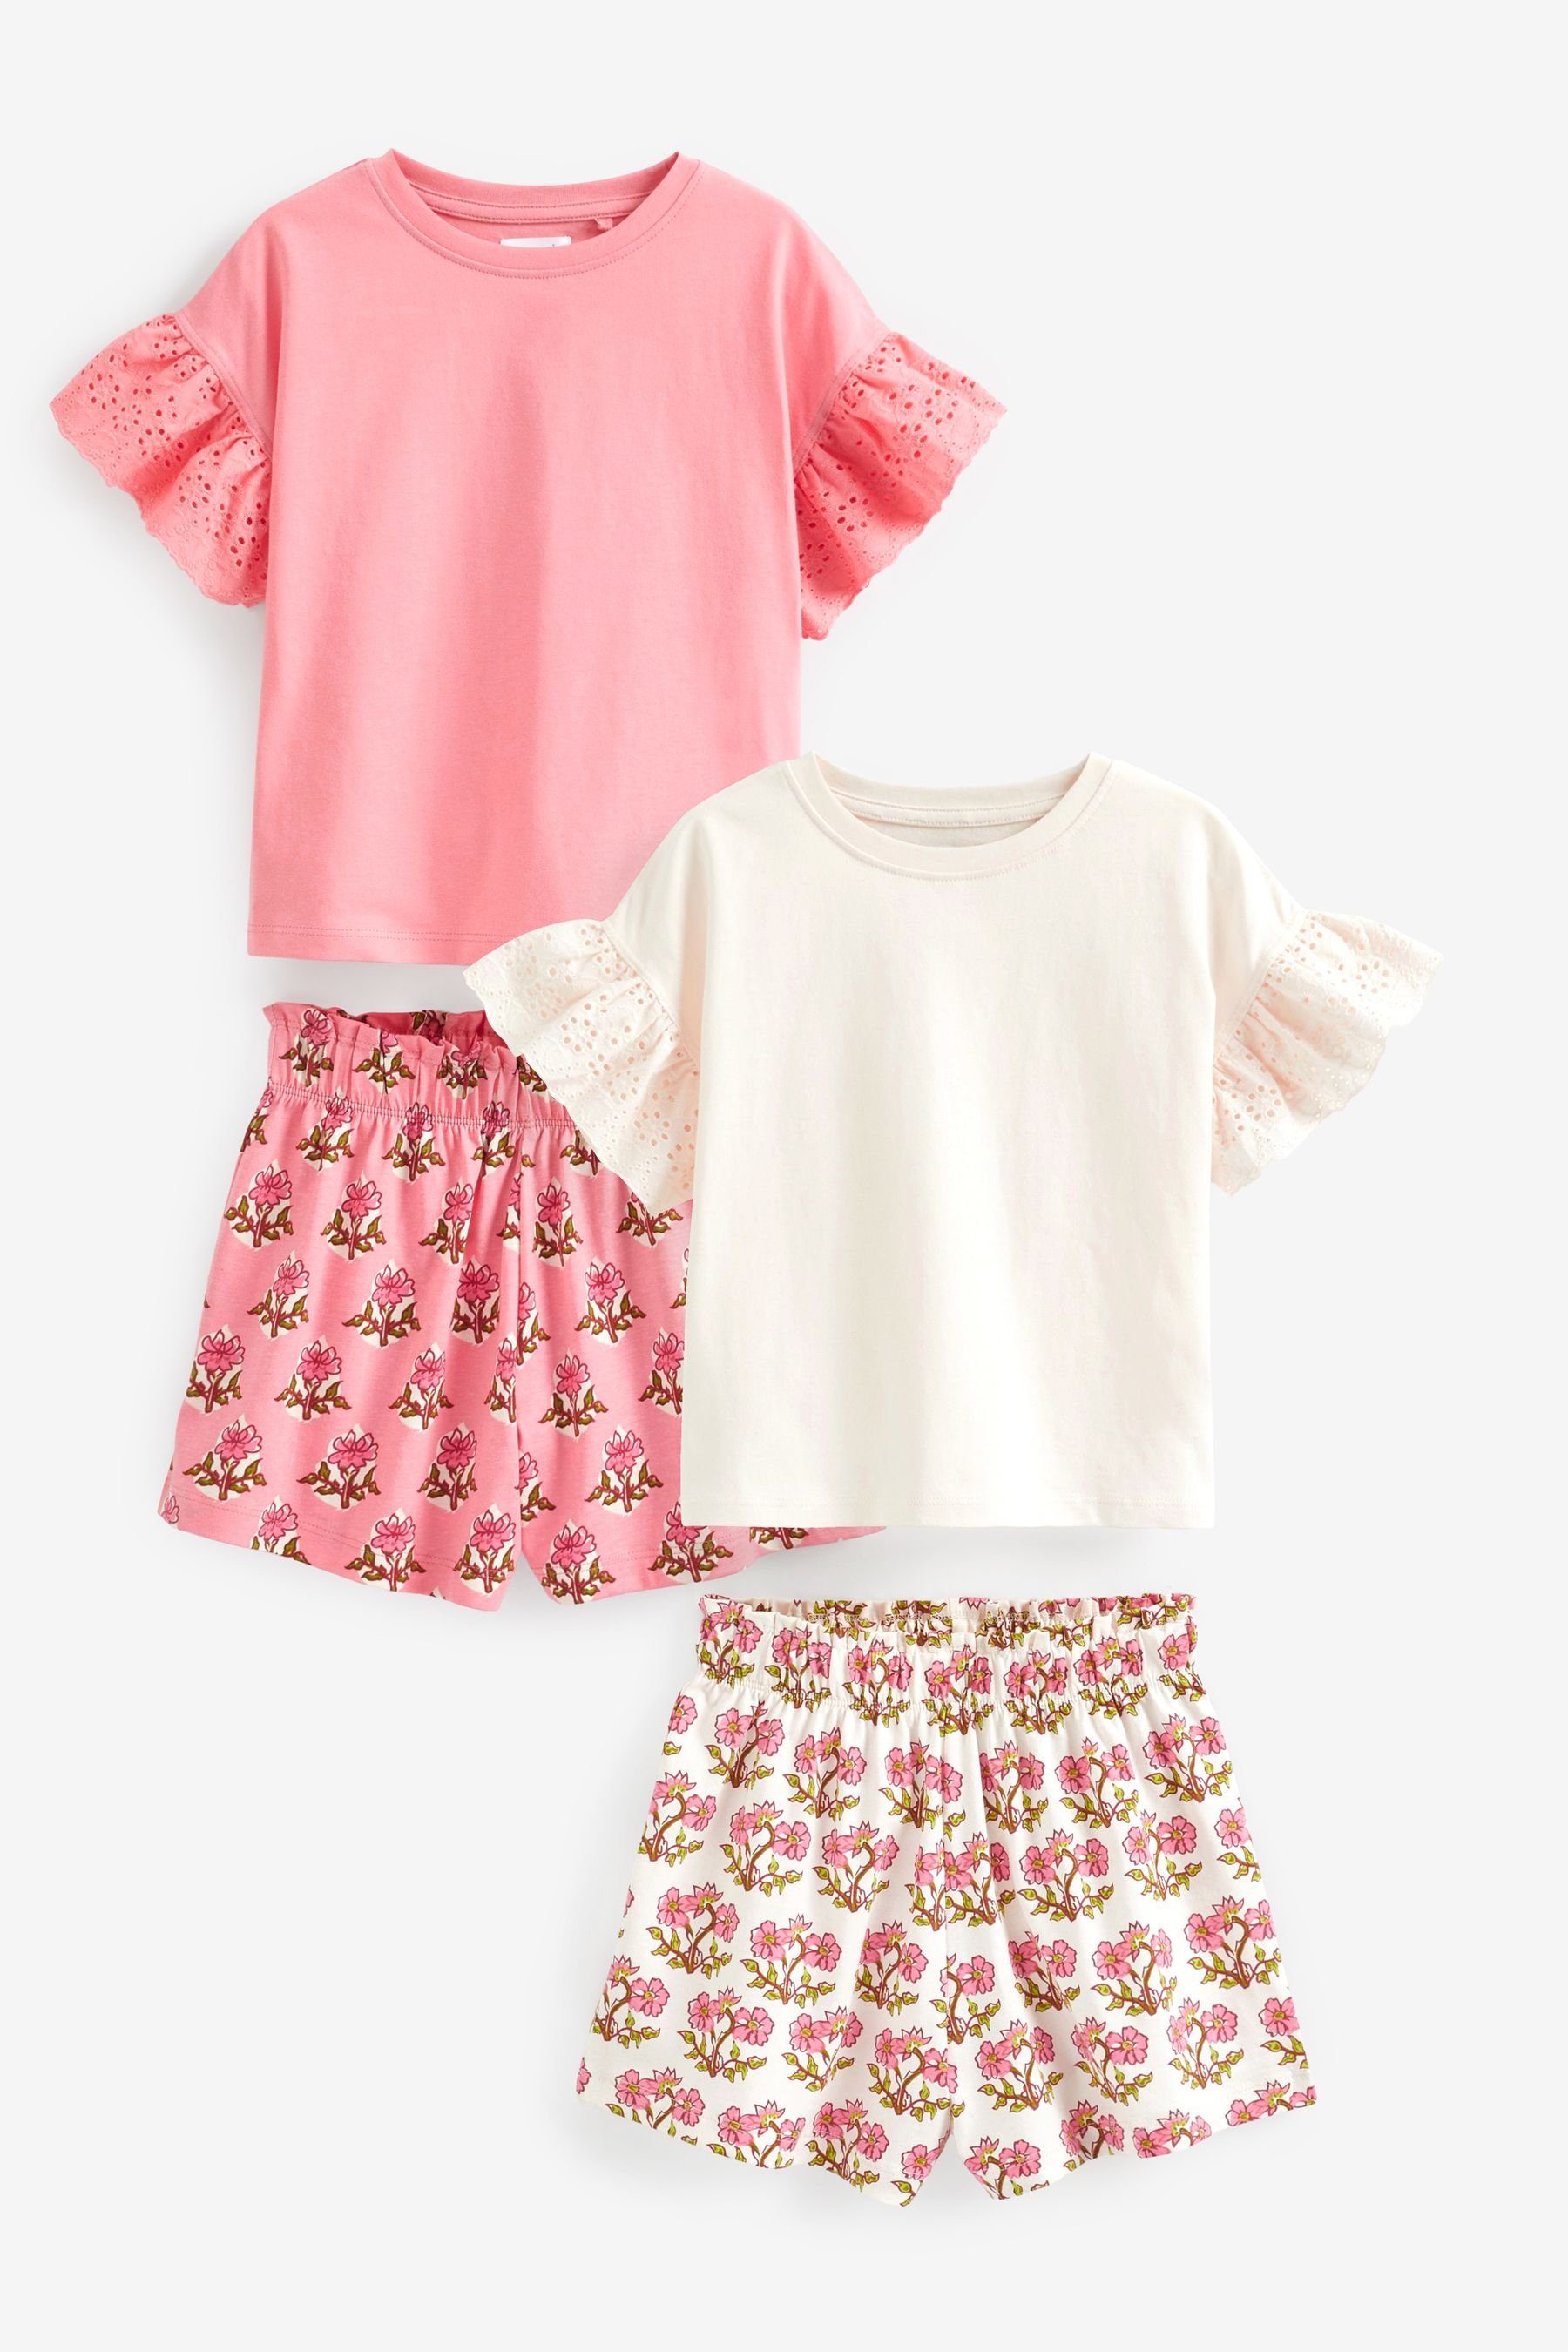 Next Pyjama Kurze Schlafanzüge, 2er-Pack (4 tlg) Pink/White Floral